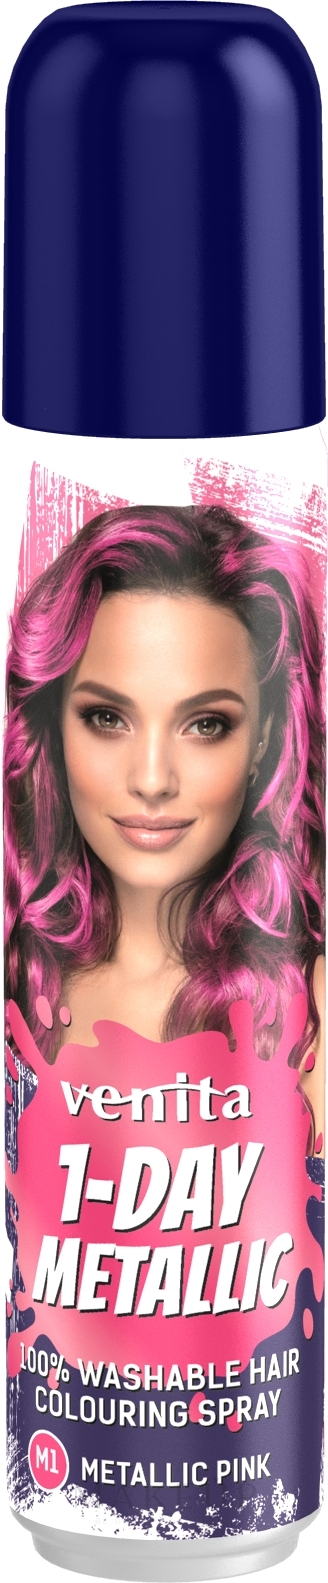 Farbiges Haarspray auswaschbar - Venita 1-Day Color Metallic Spray — Bild M1 - Pink